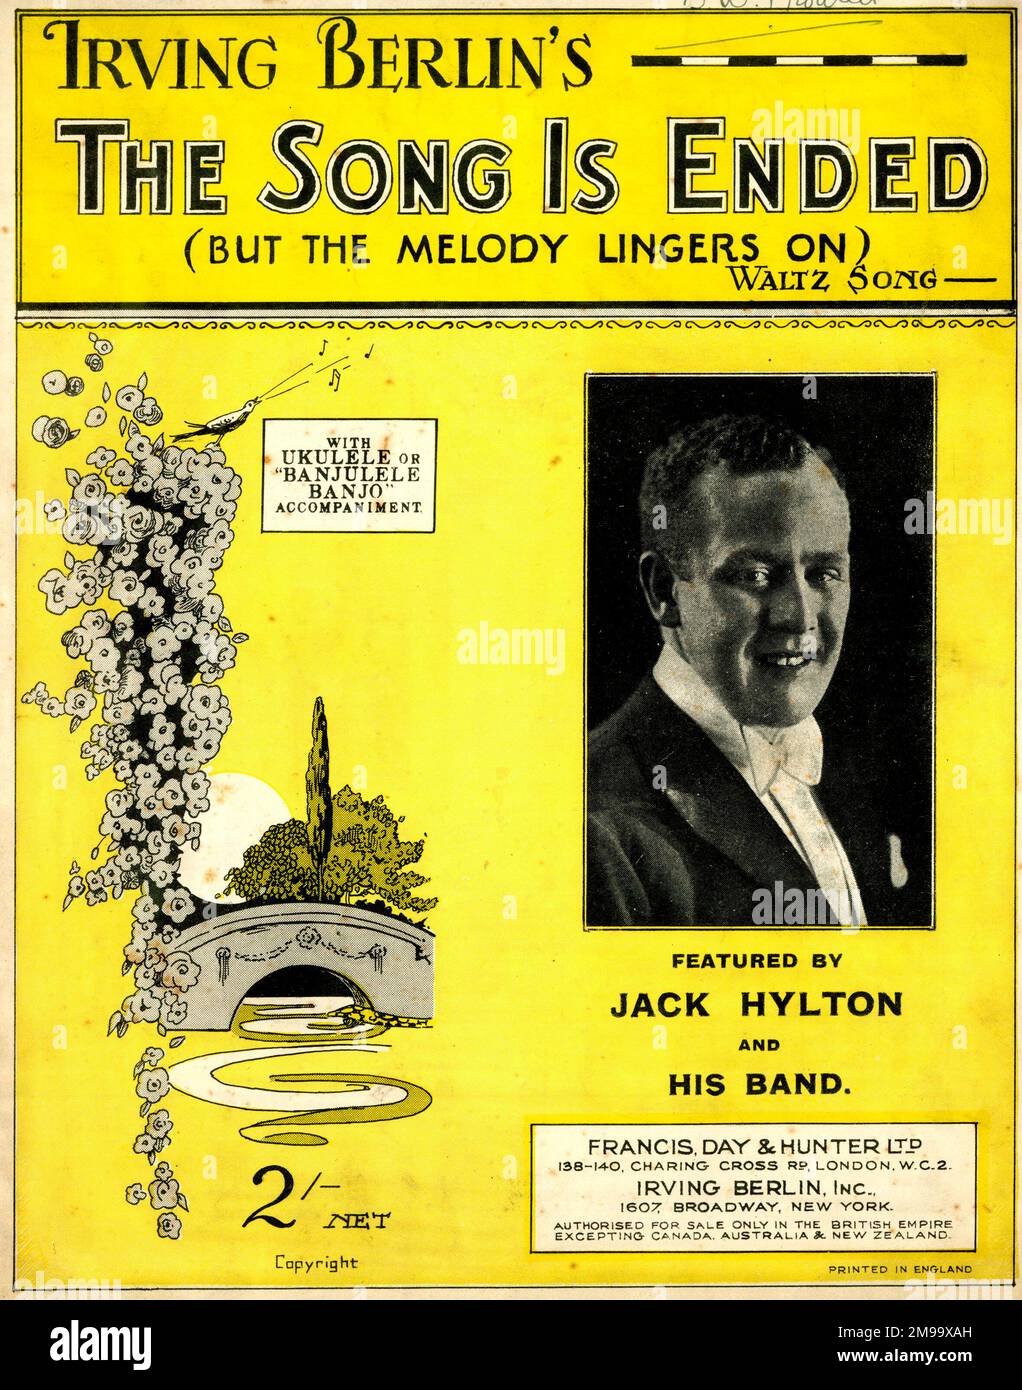 La couverture musicale, la chanson est terminée (mais la mélodie continue), la chanson de valse d'Irving Berlin, présentée par Jack Hylton et son groupe. Banque D'Images